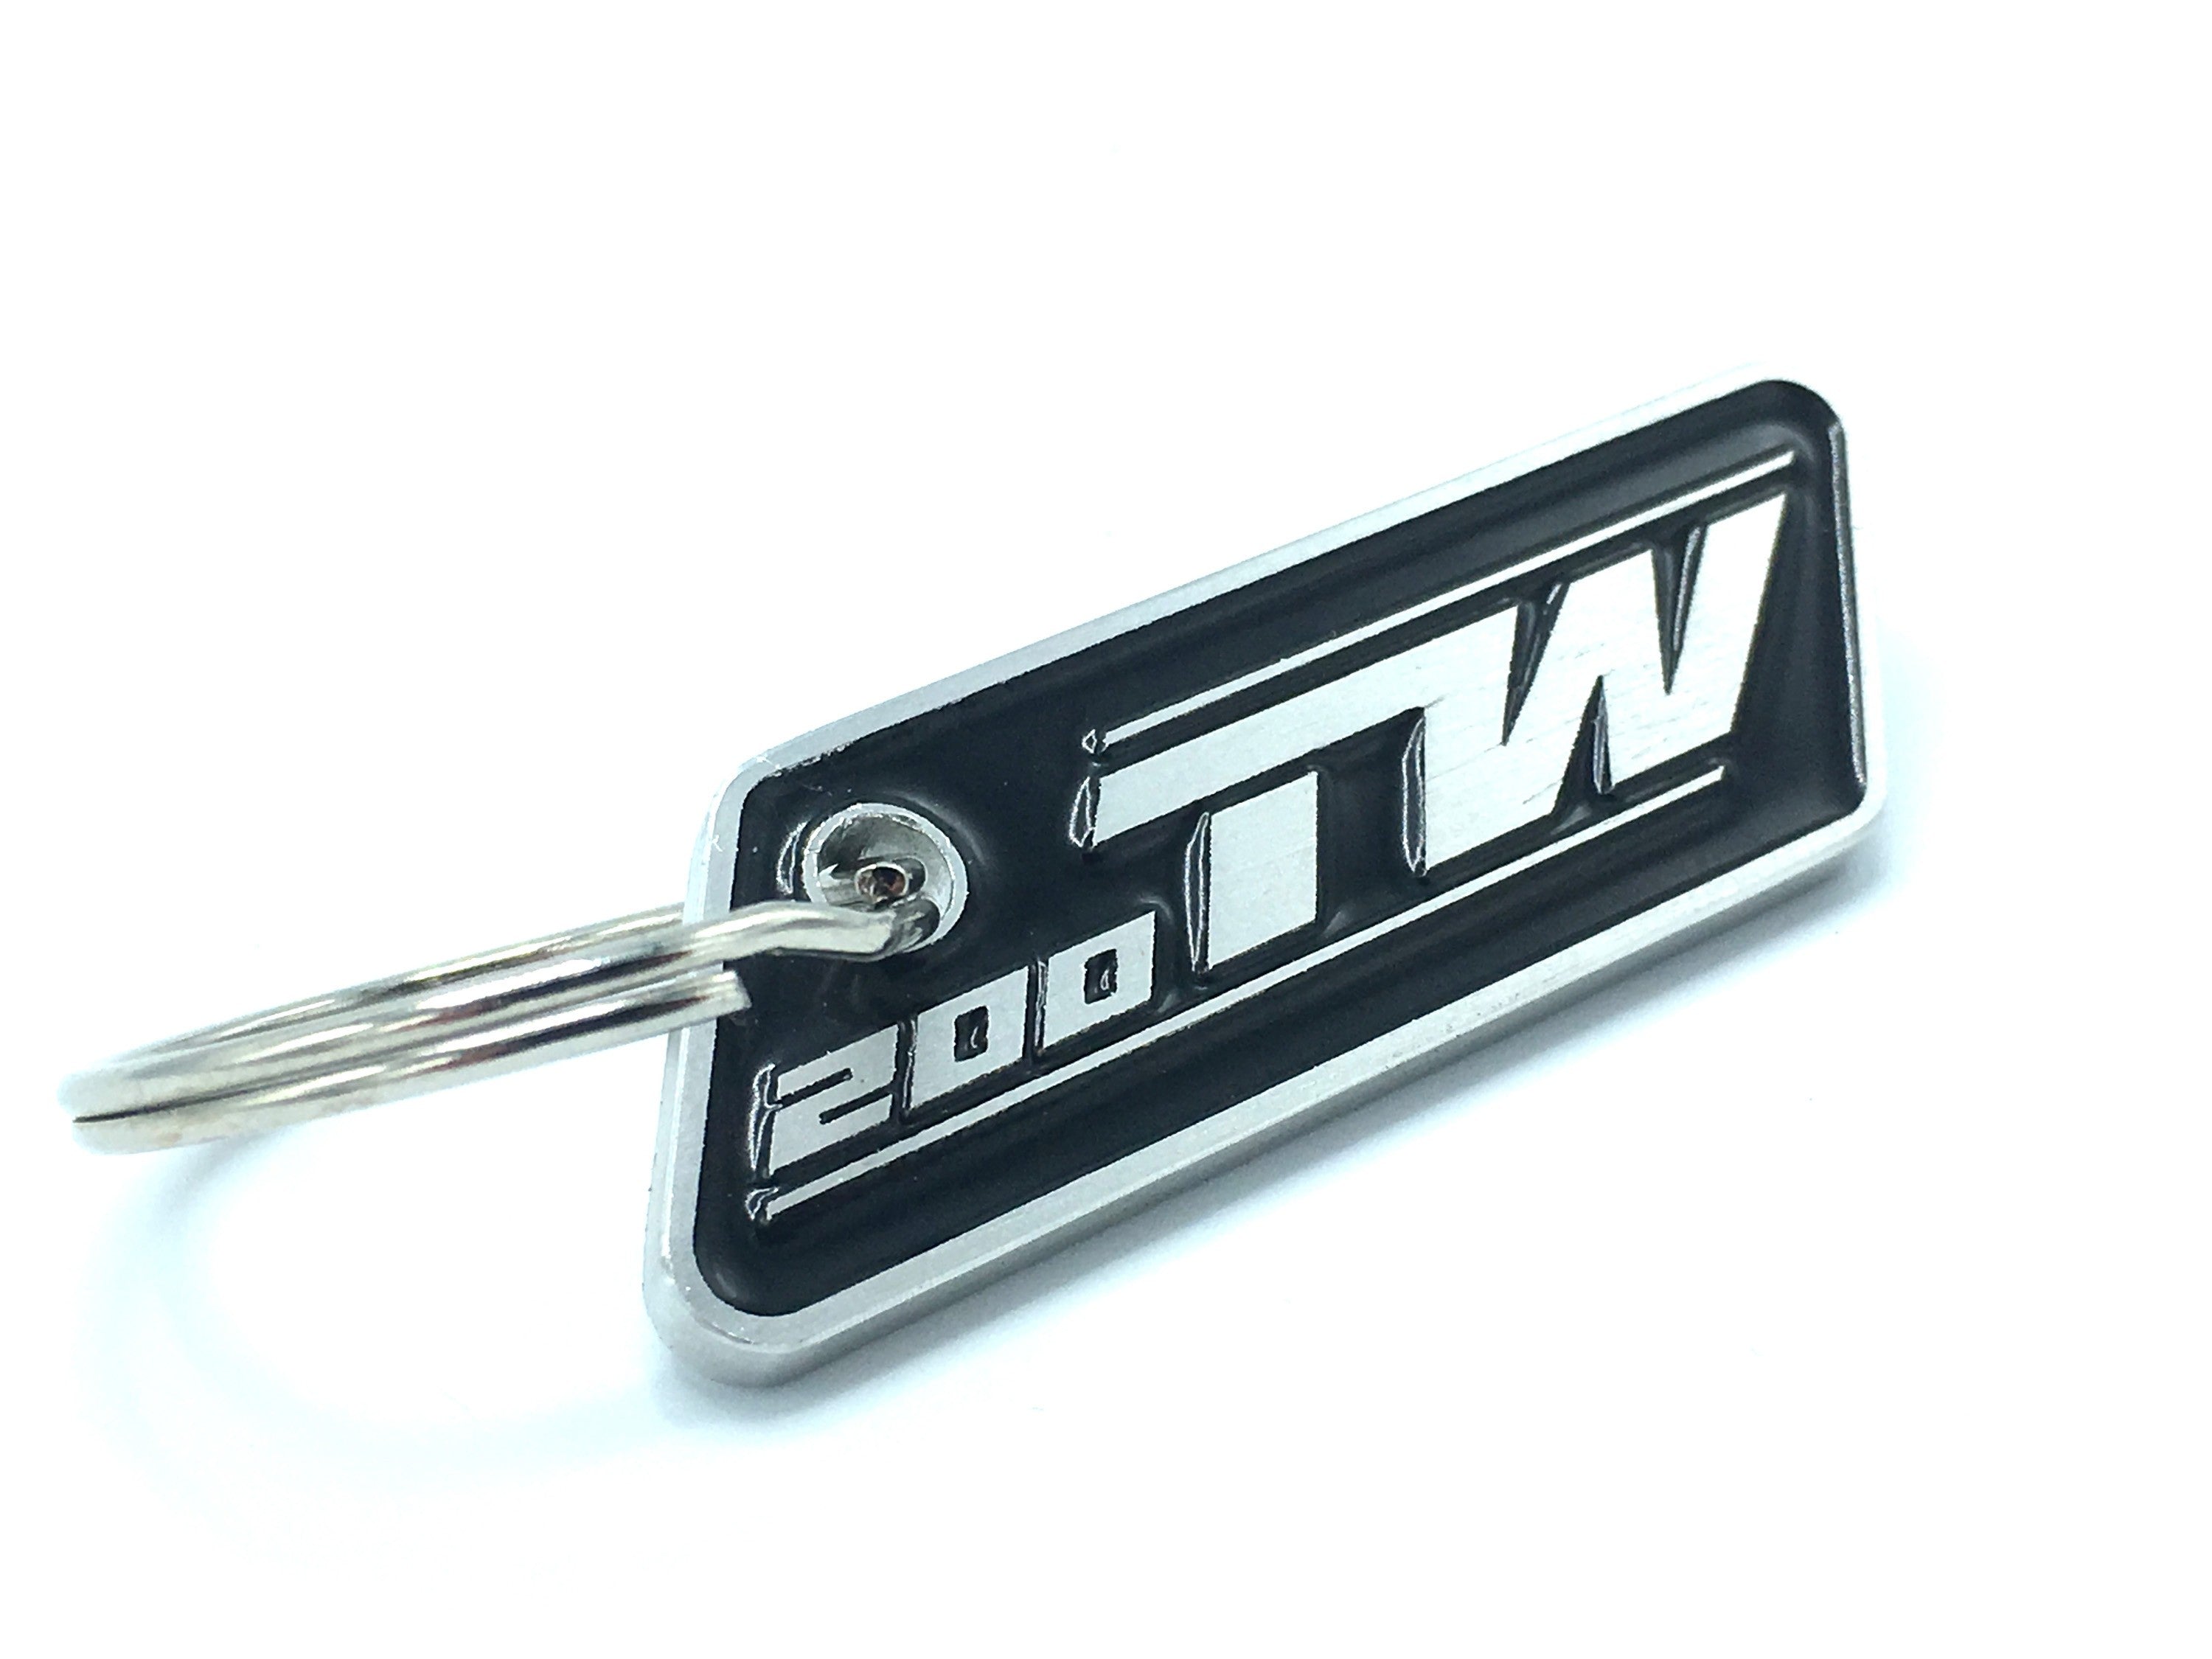 TW200 Keychain (TW 200, Trailway, Yamaha)